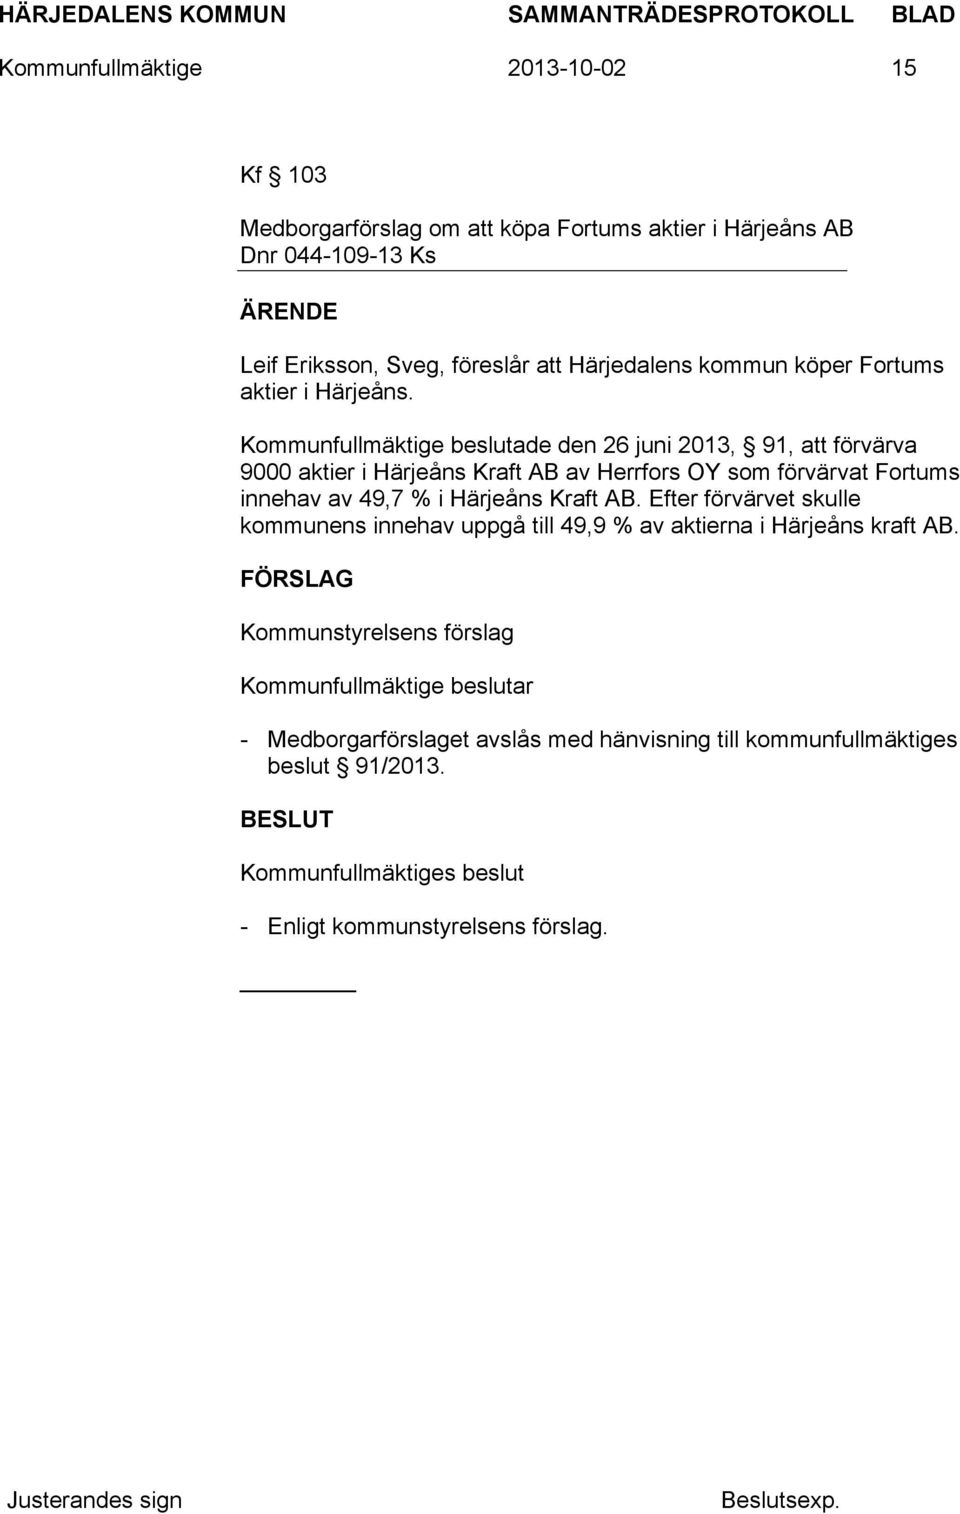 Kommunfullmäktige beslutade den 26 juni 2013, 91, att förvärva 9000 aktier i Härjeåns Kraft AB av Herrfors OY som förvärvat Fortums innehav av 49,7 % i